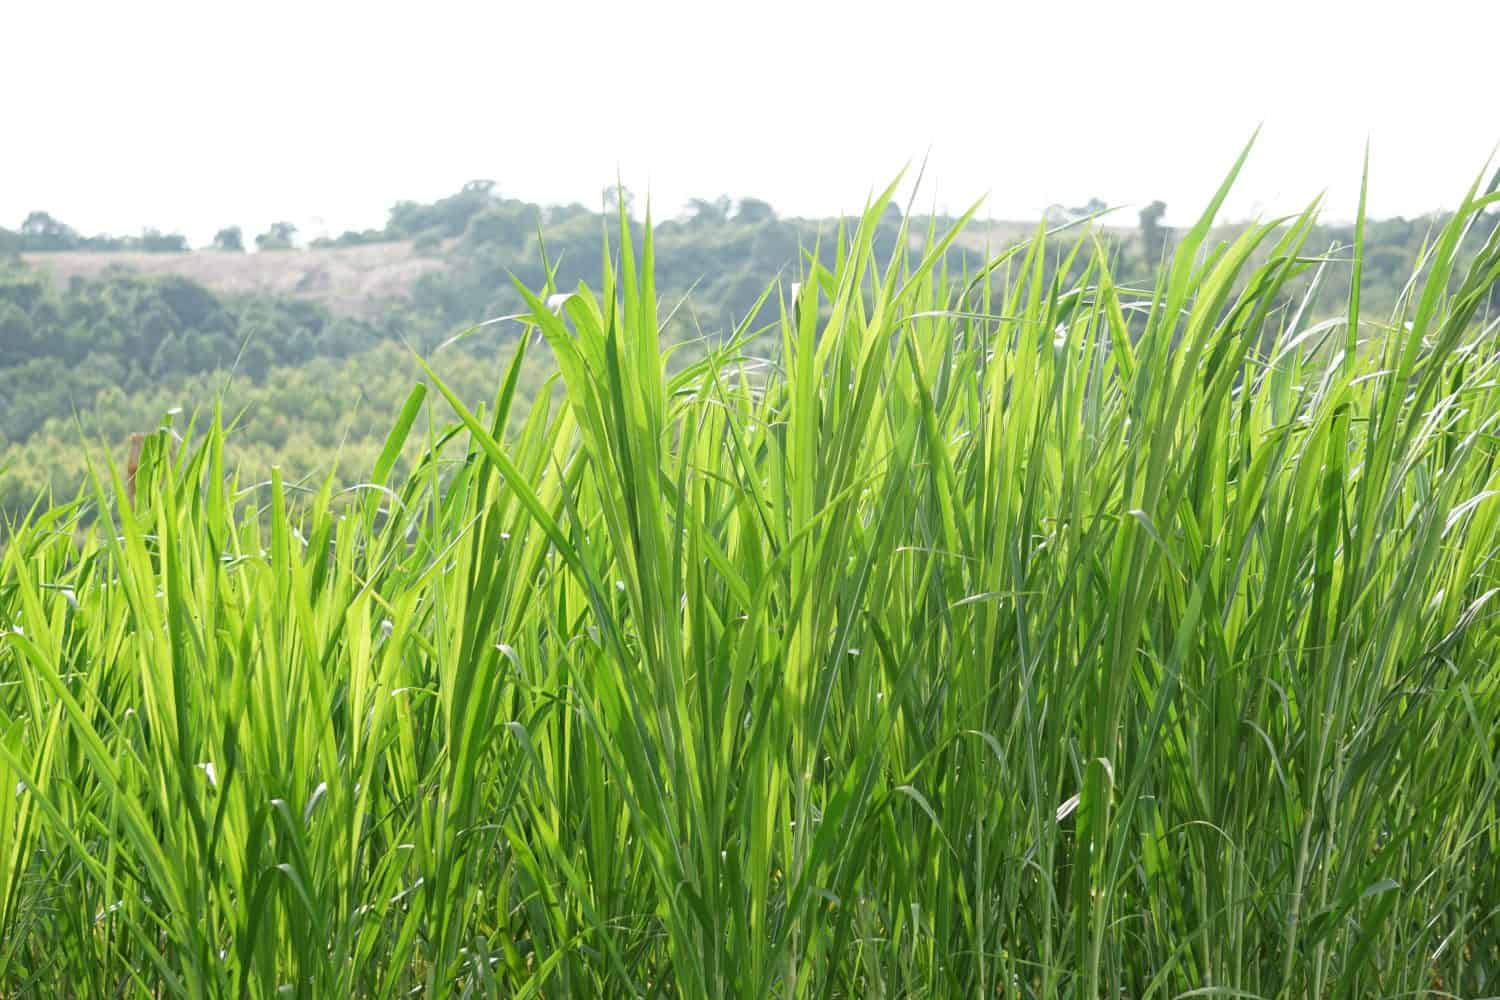 Cenchrus purpureus, synonym Pennisetum purpureum, also known as Napier grass, elephant grass or Uganda grass, is a species of perennial tropical grass native to the African grasslands.